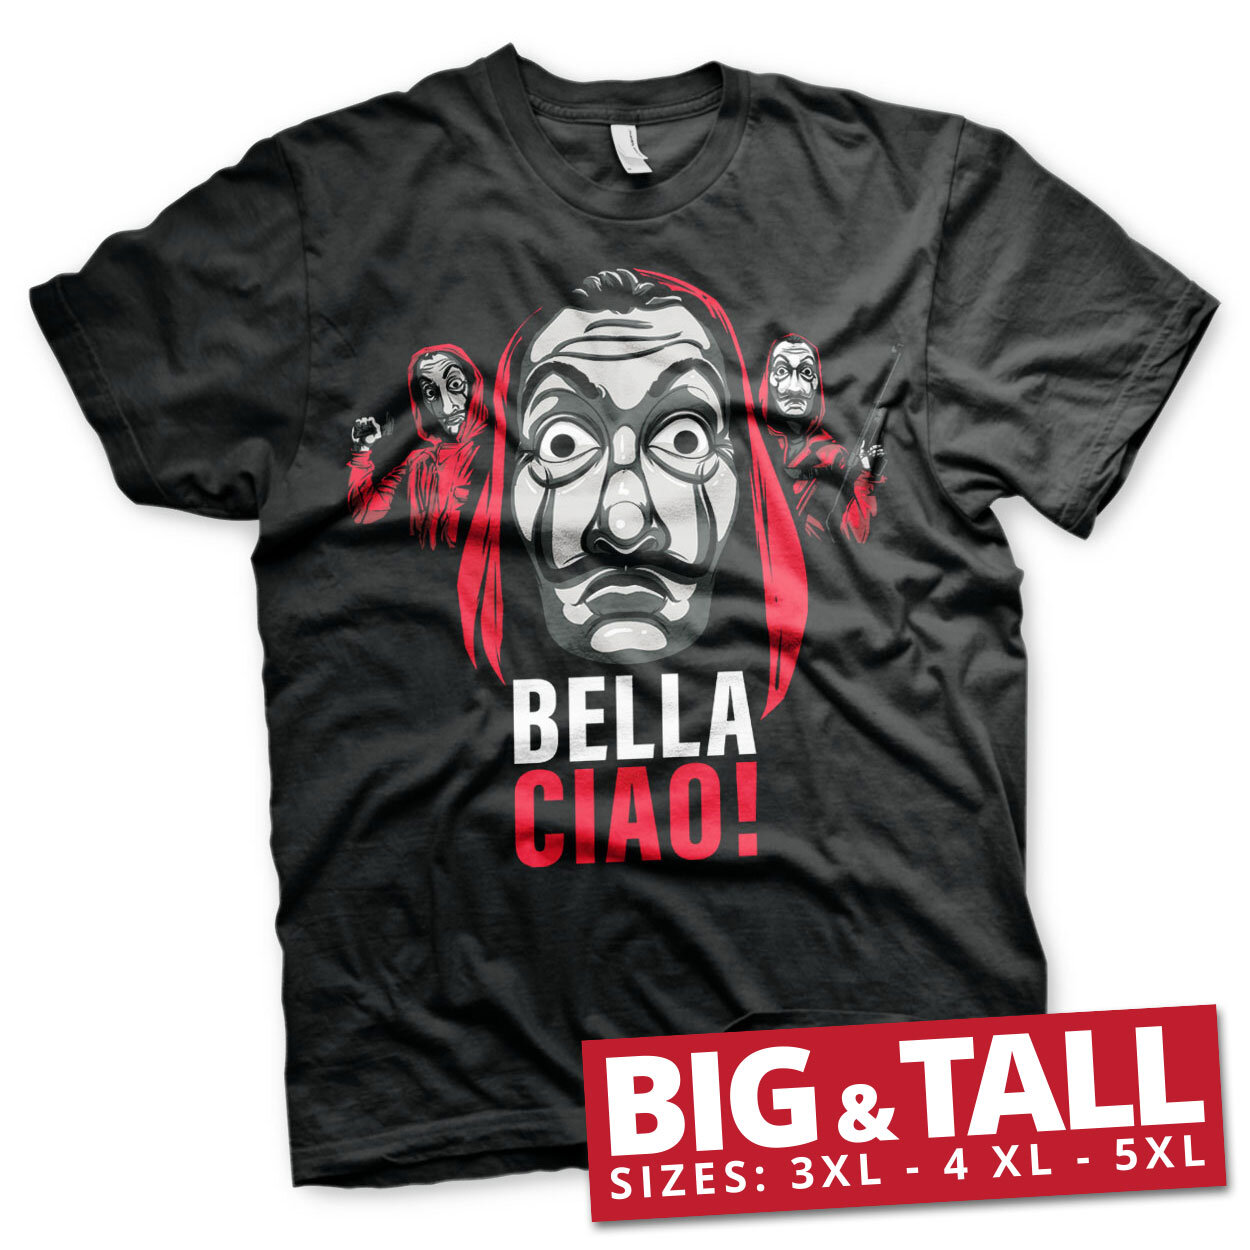 La Casa De Papel - Bella Ciao! Big & Tall T-Shirt